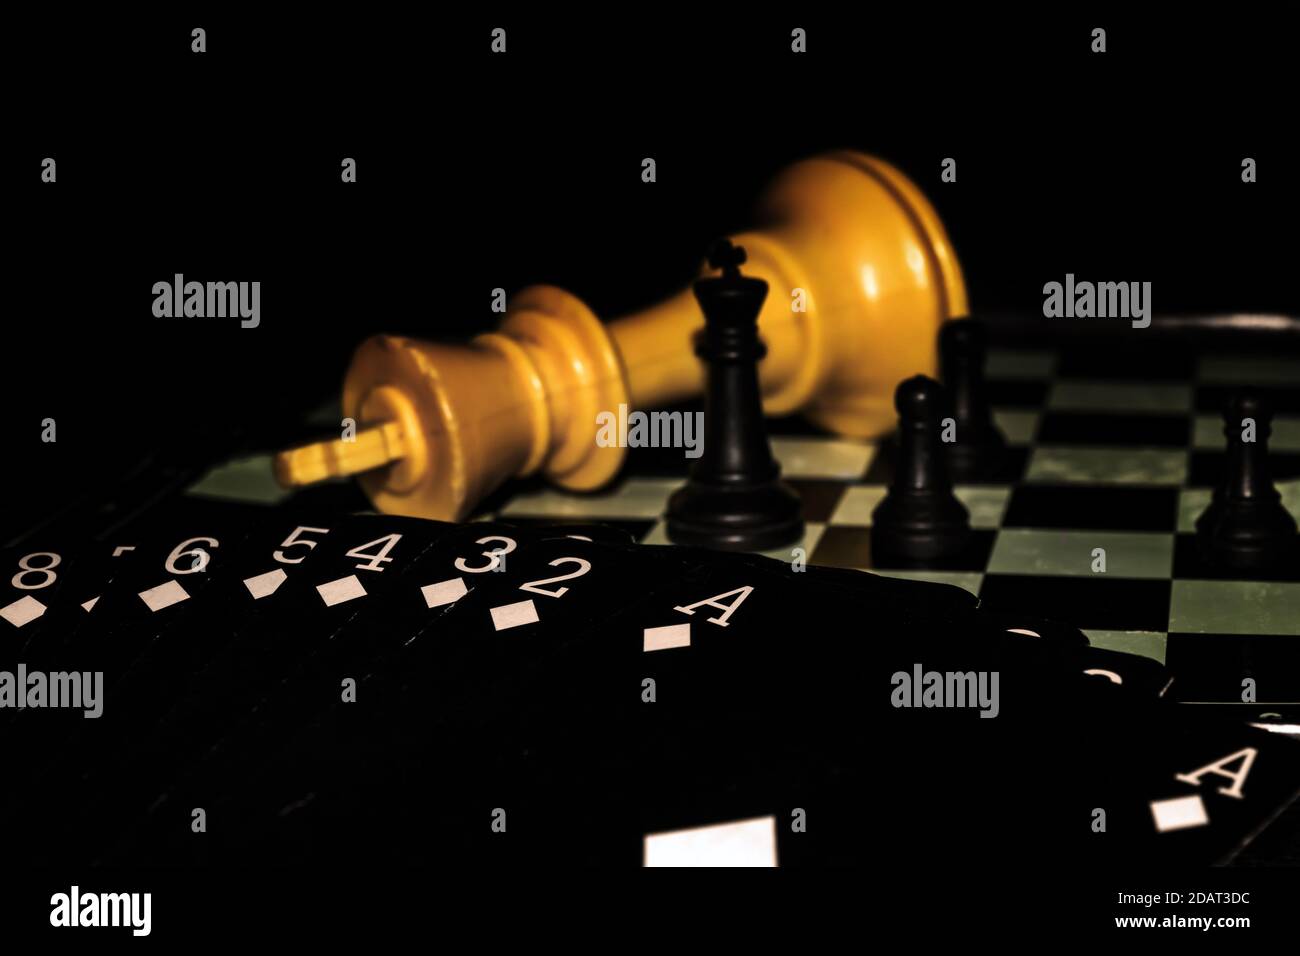 Mostra di un mazzo di carte nere che mostrano solo carte di diamante, su una scacchiera con quattro pezzi di scacchi in piedi e un grande re giallo sdraiato. Foto Stock